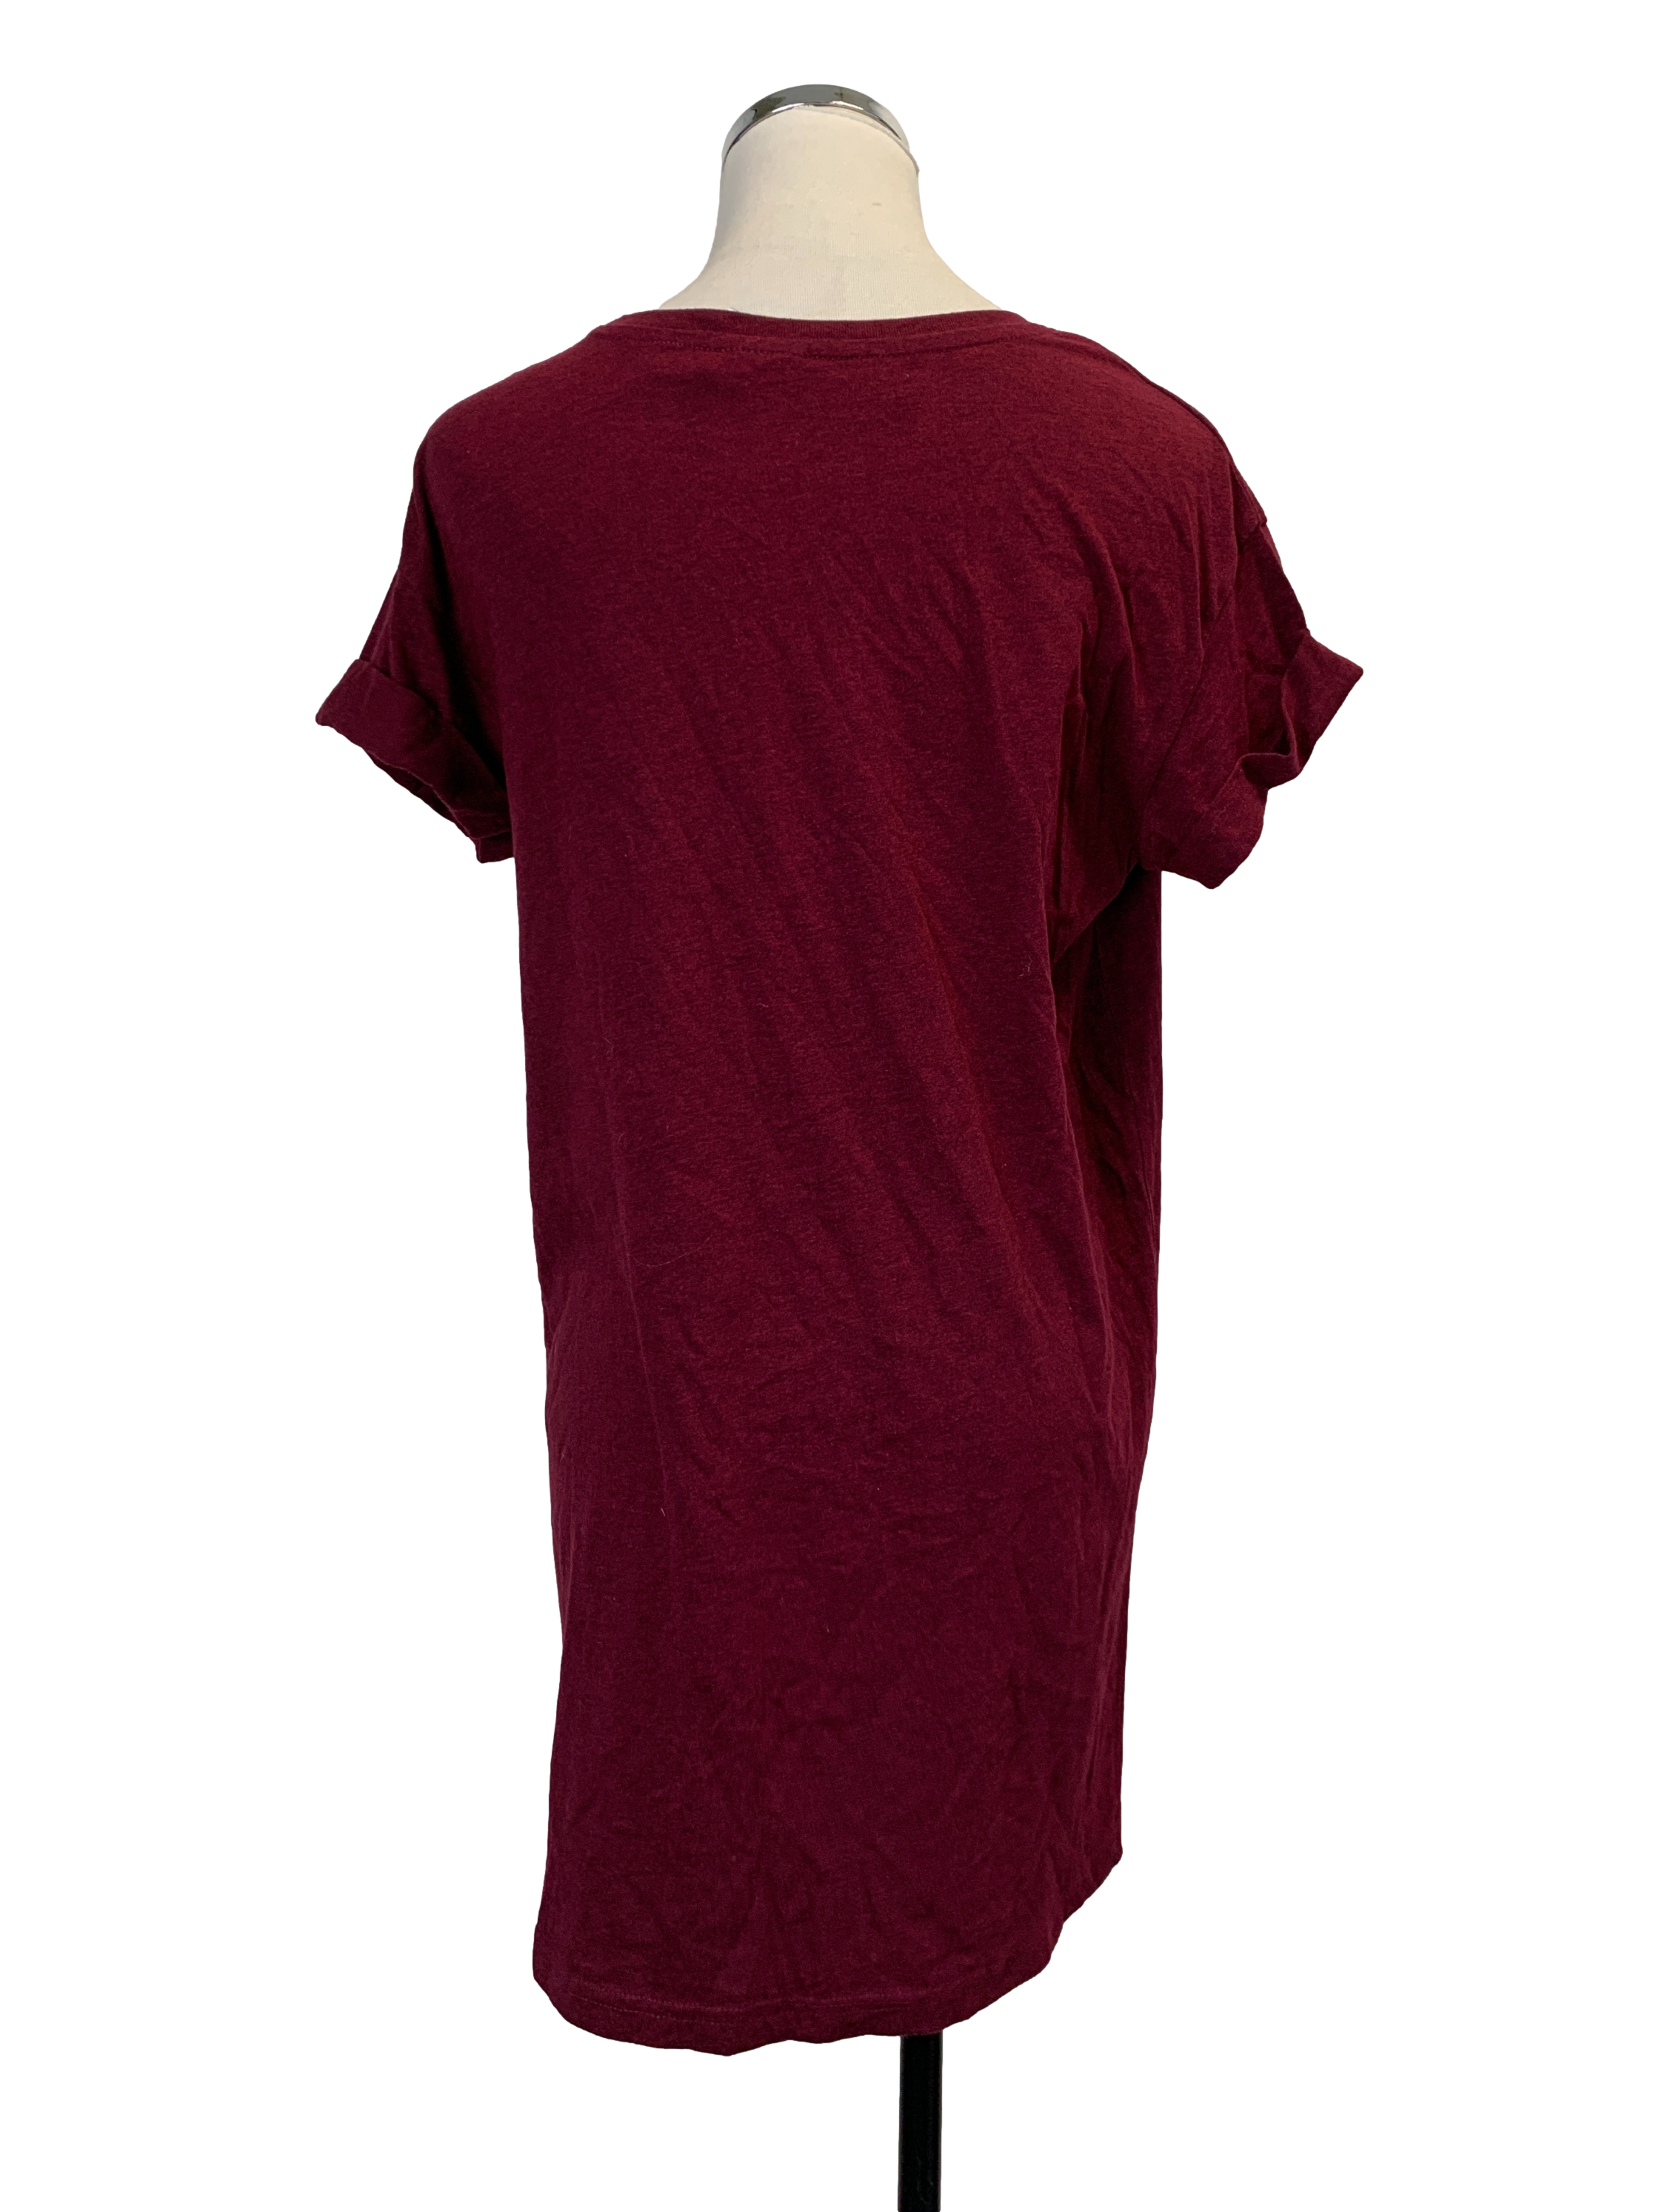 Maroon T-Shirt Dress